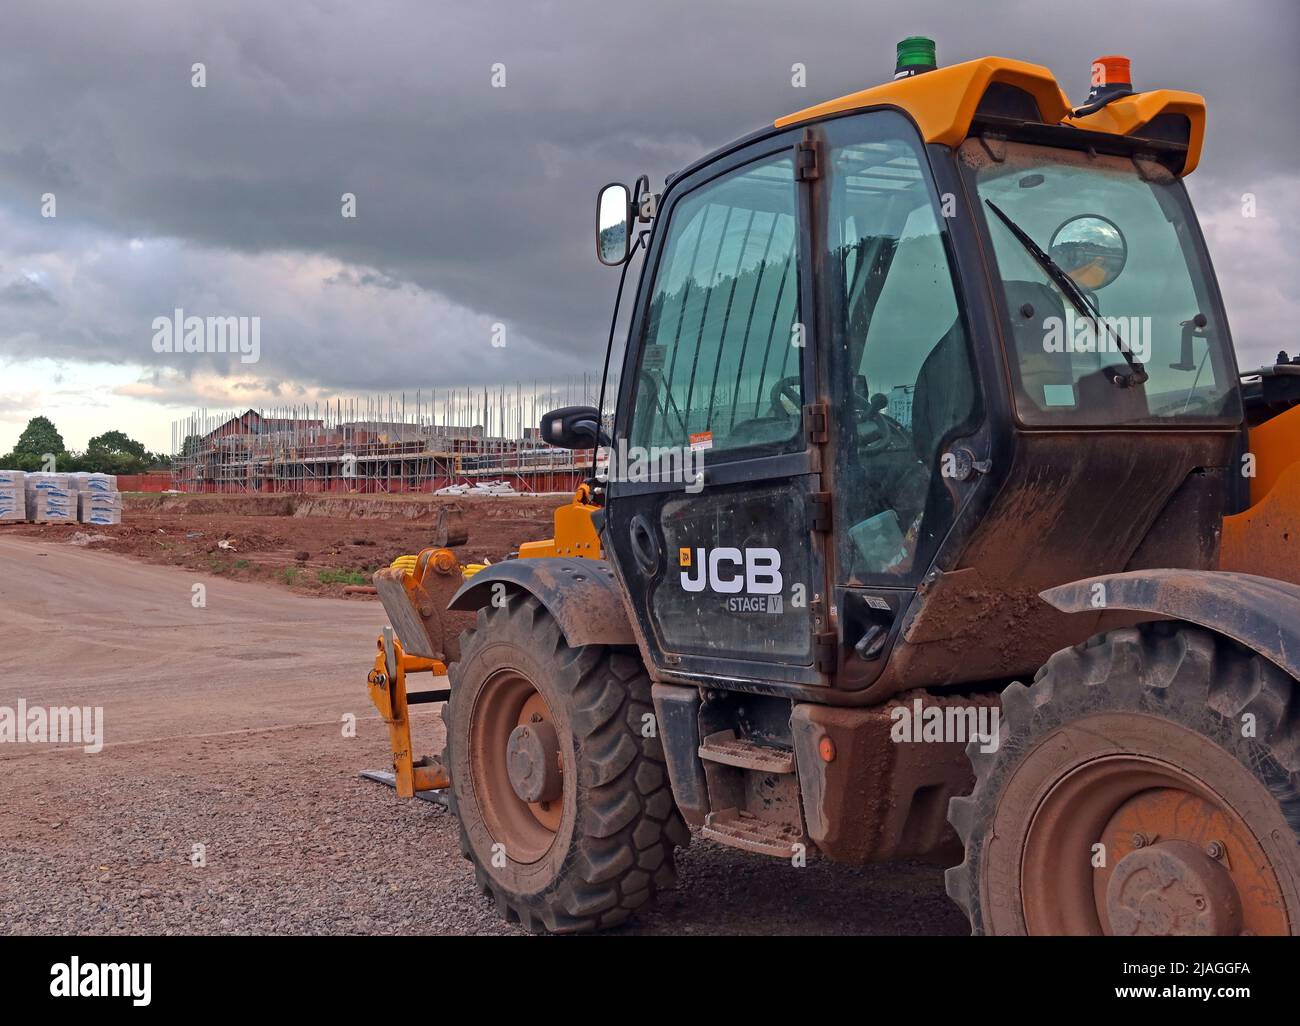 JCB Stage V véhicule moteur, sur un chantier, pour les nouvelles maisons, Grappenhall Heys, Warrington, Cheshire, Angleterre, Royaume-Uni Banque D'Images